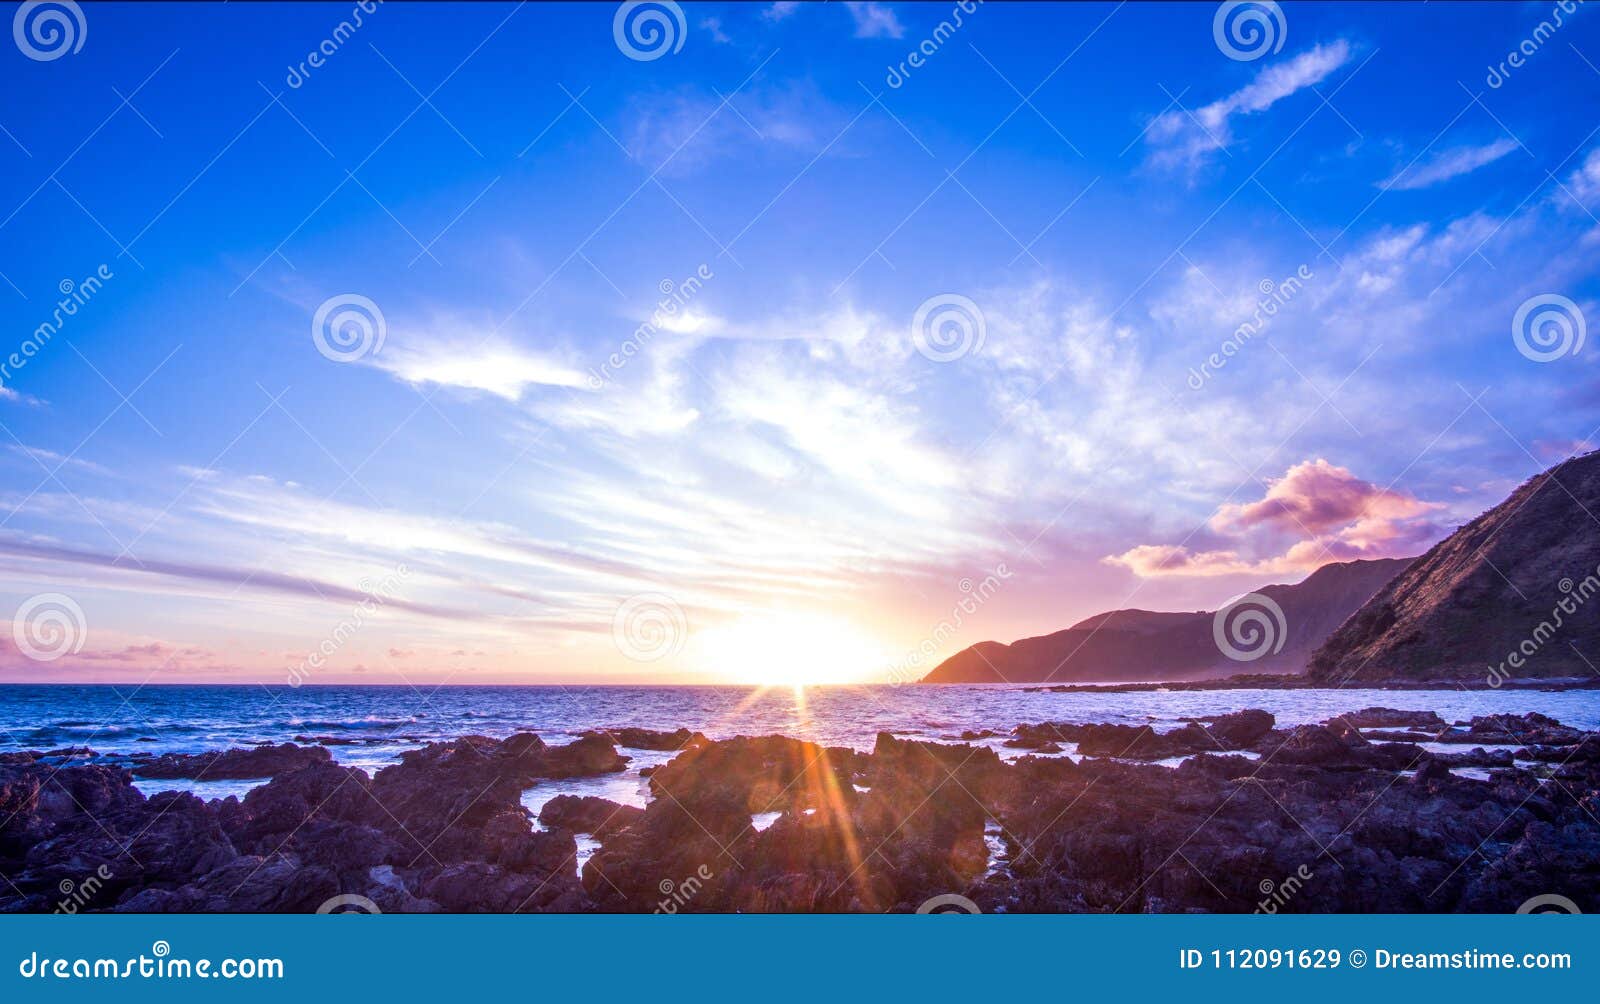 Sunset photo sets kiwi Daylight saving